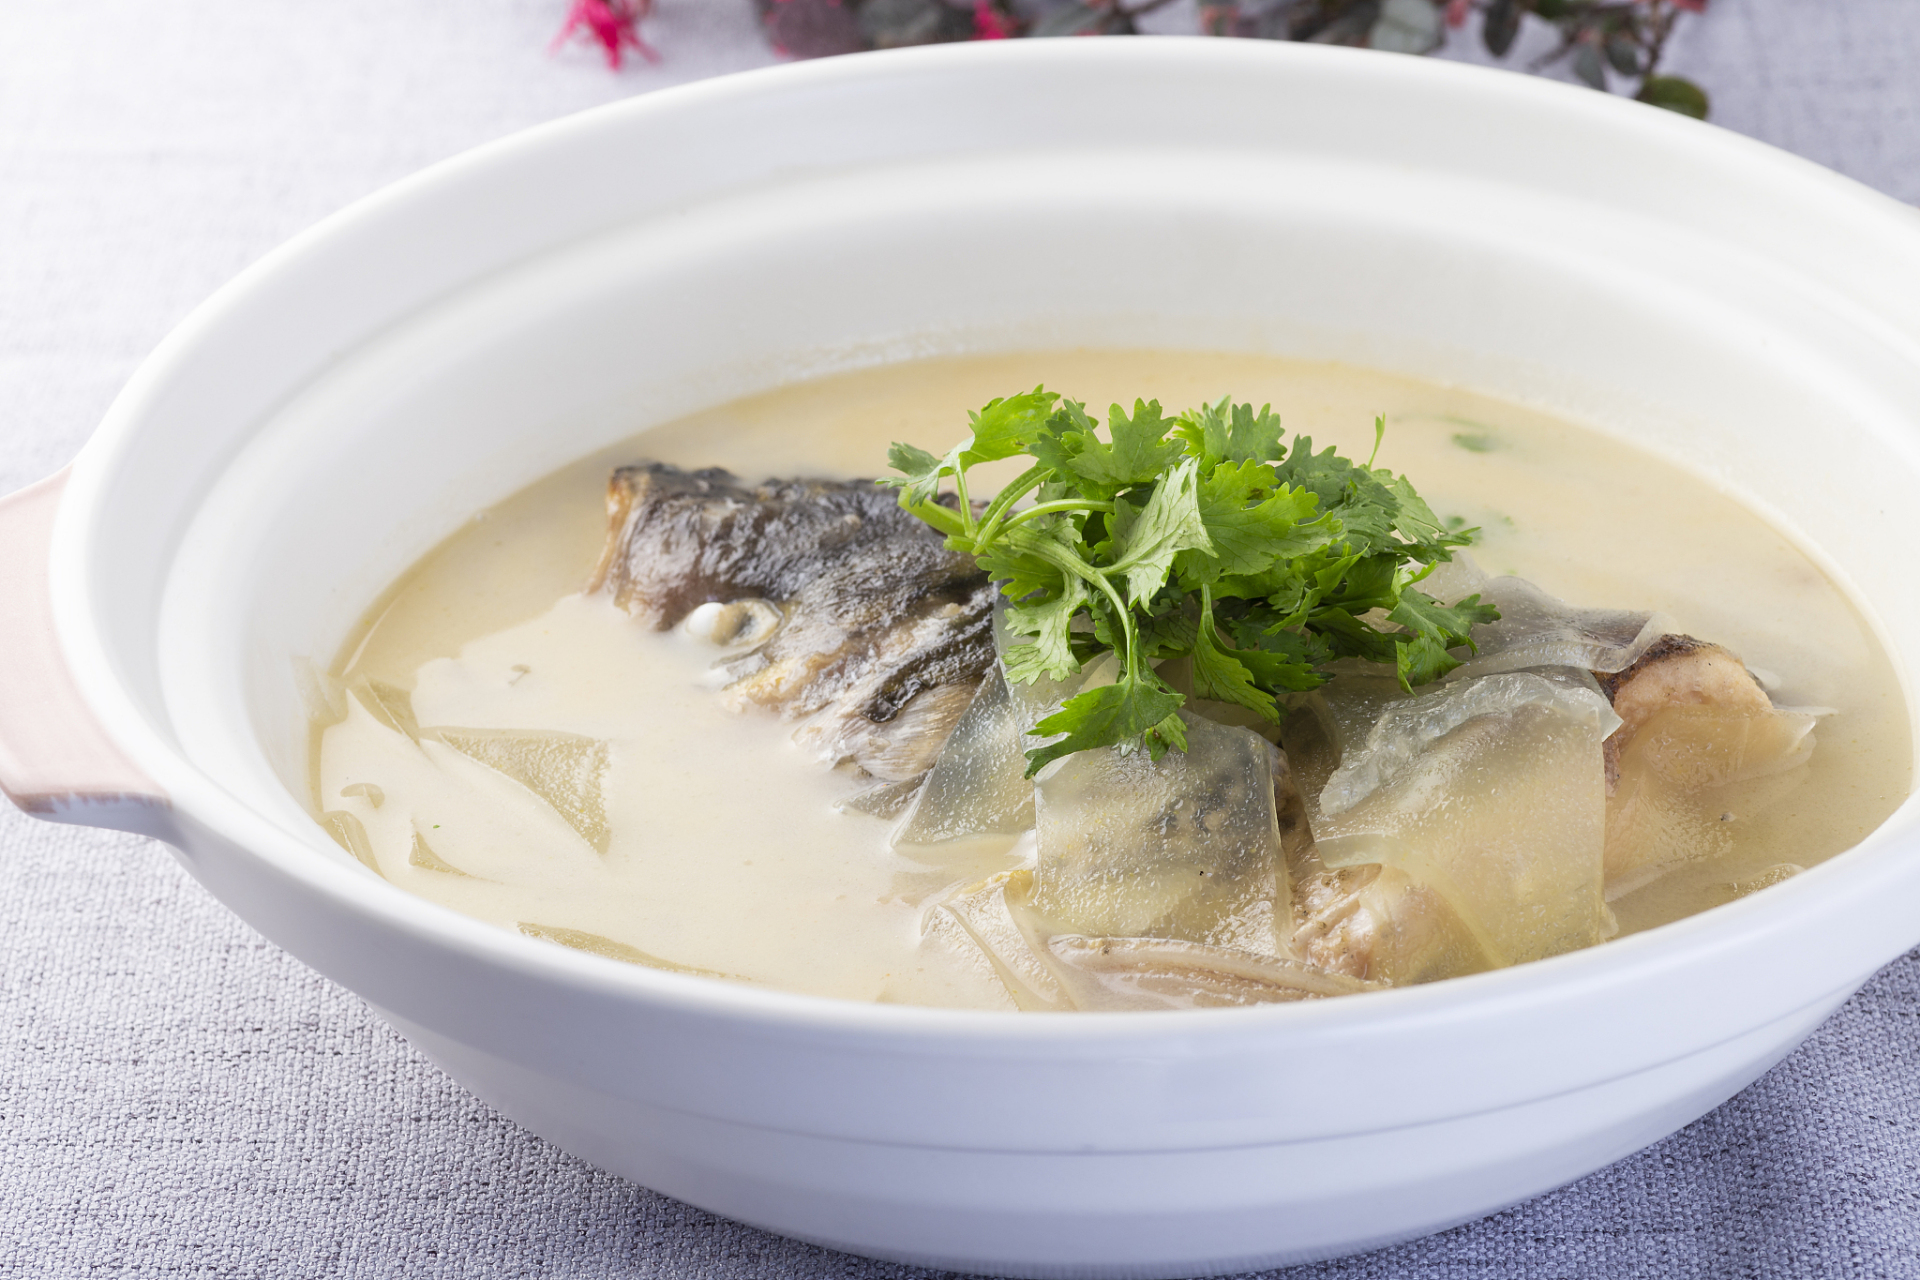 砂锅鱼头汤是一道美味又营养丰富的汤品,采用大头鲢鱼制作更加鲜美